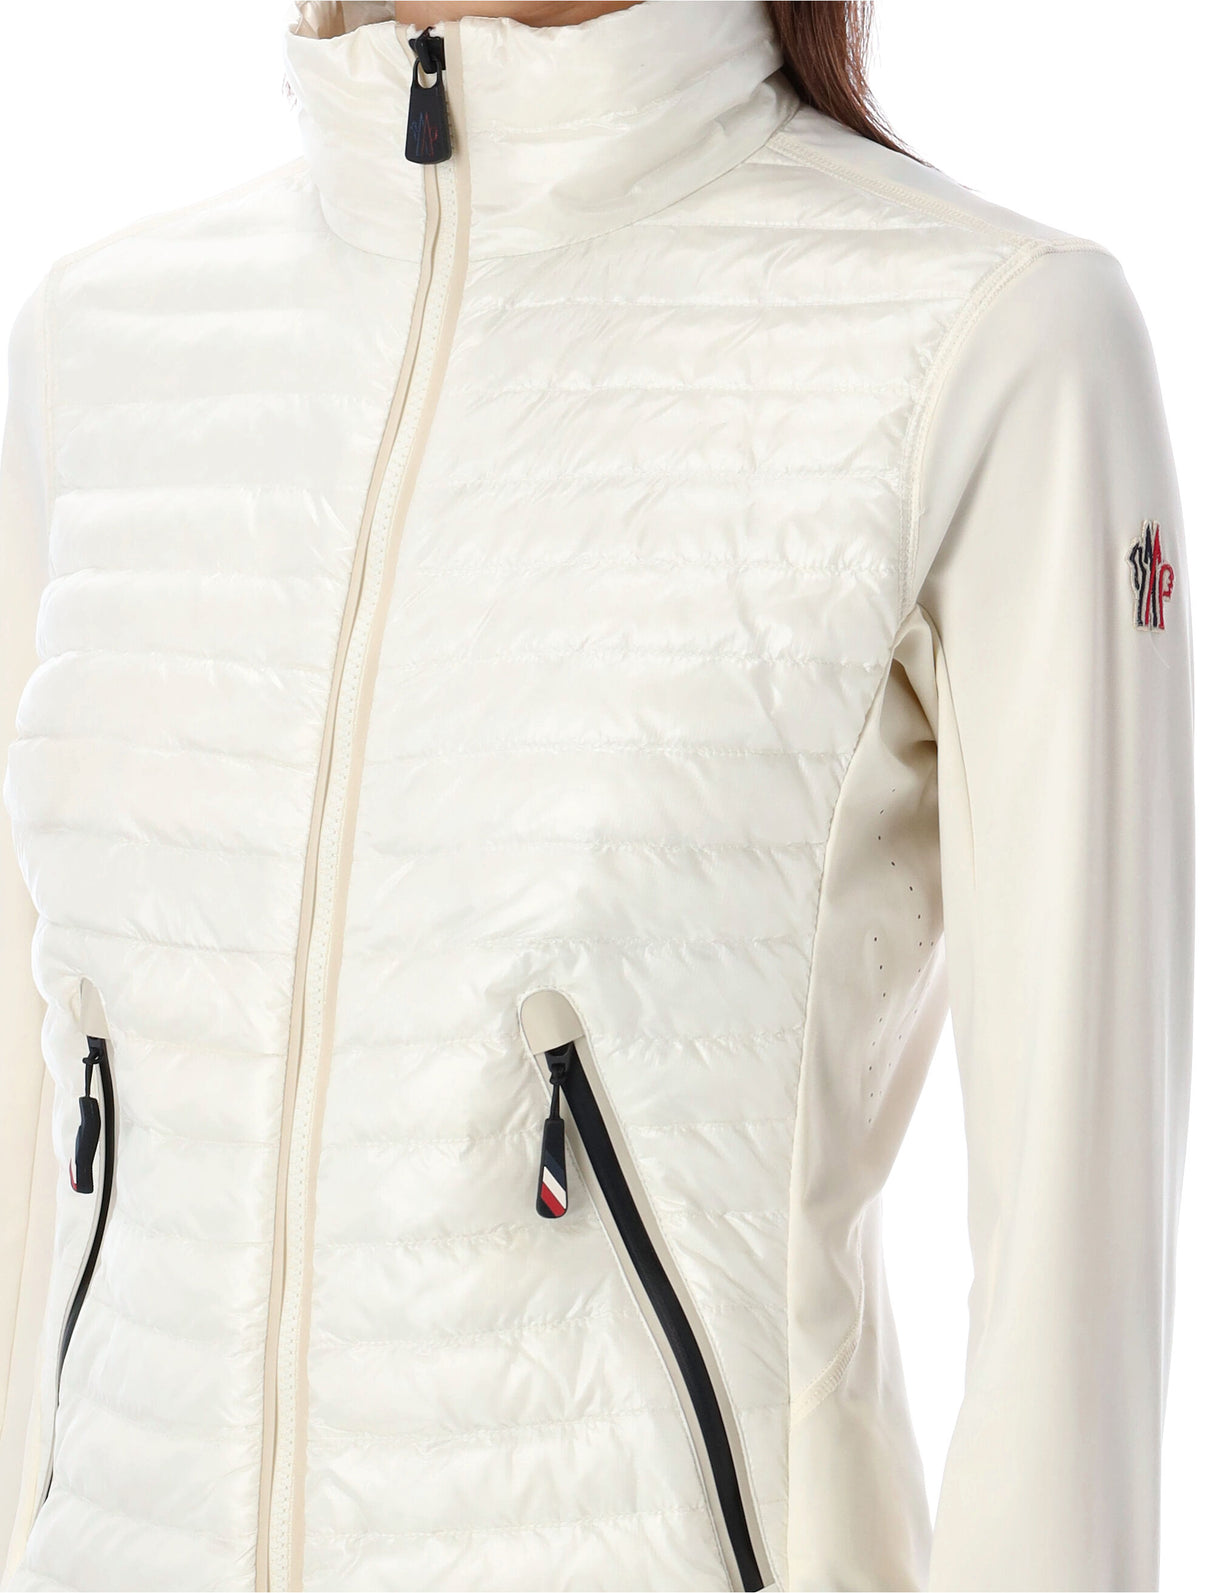 Áo khoác len kéo khóa màu trắng dành cho nữ